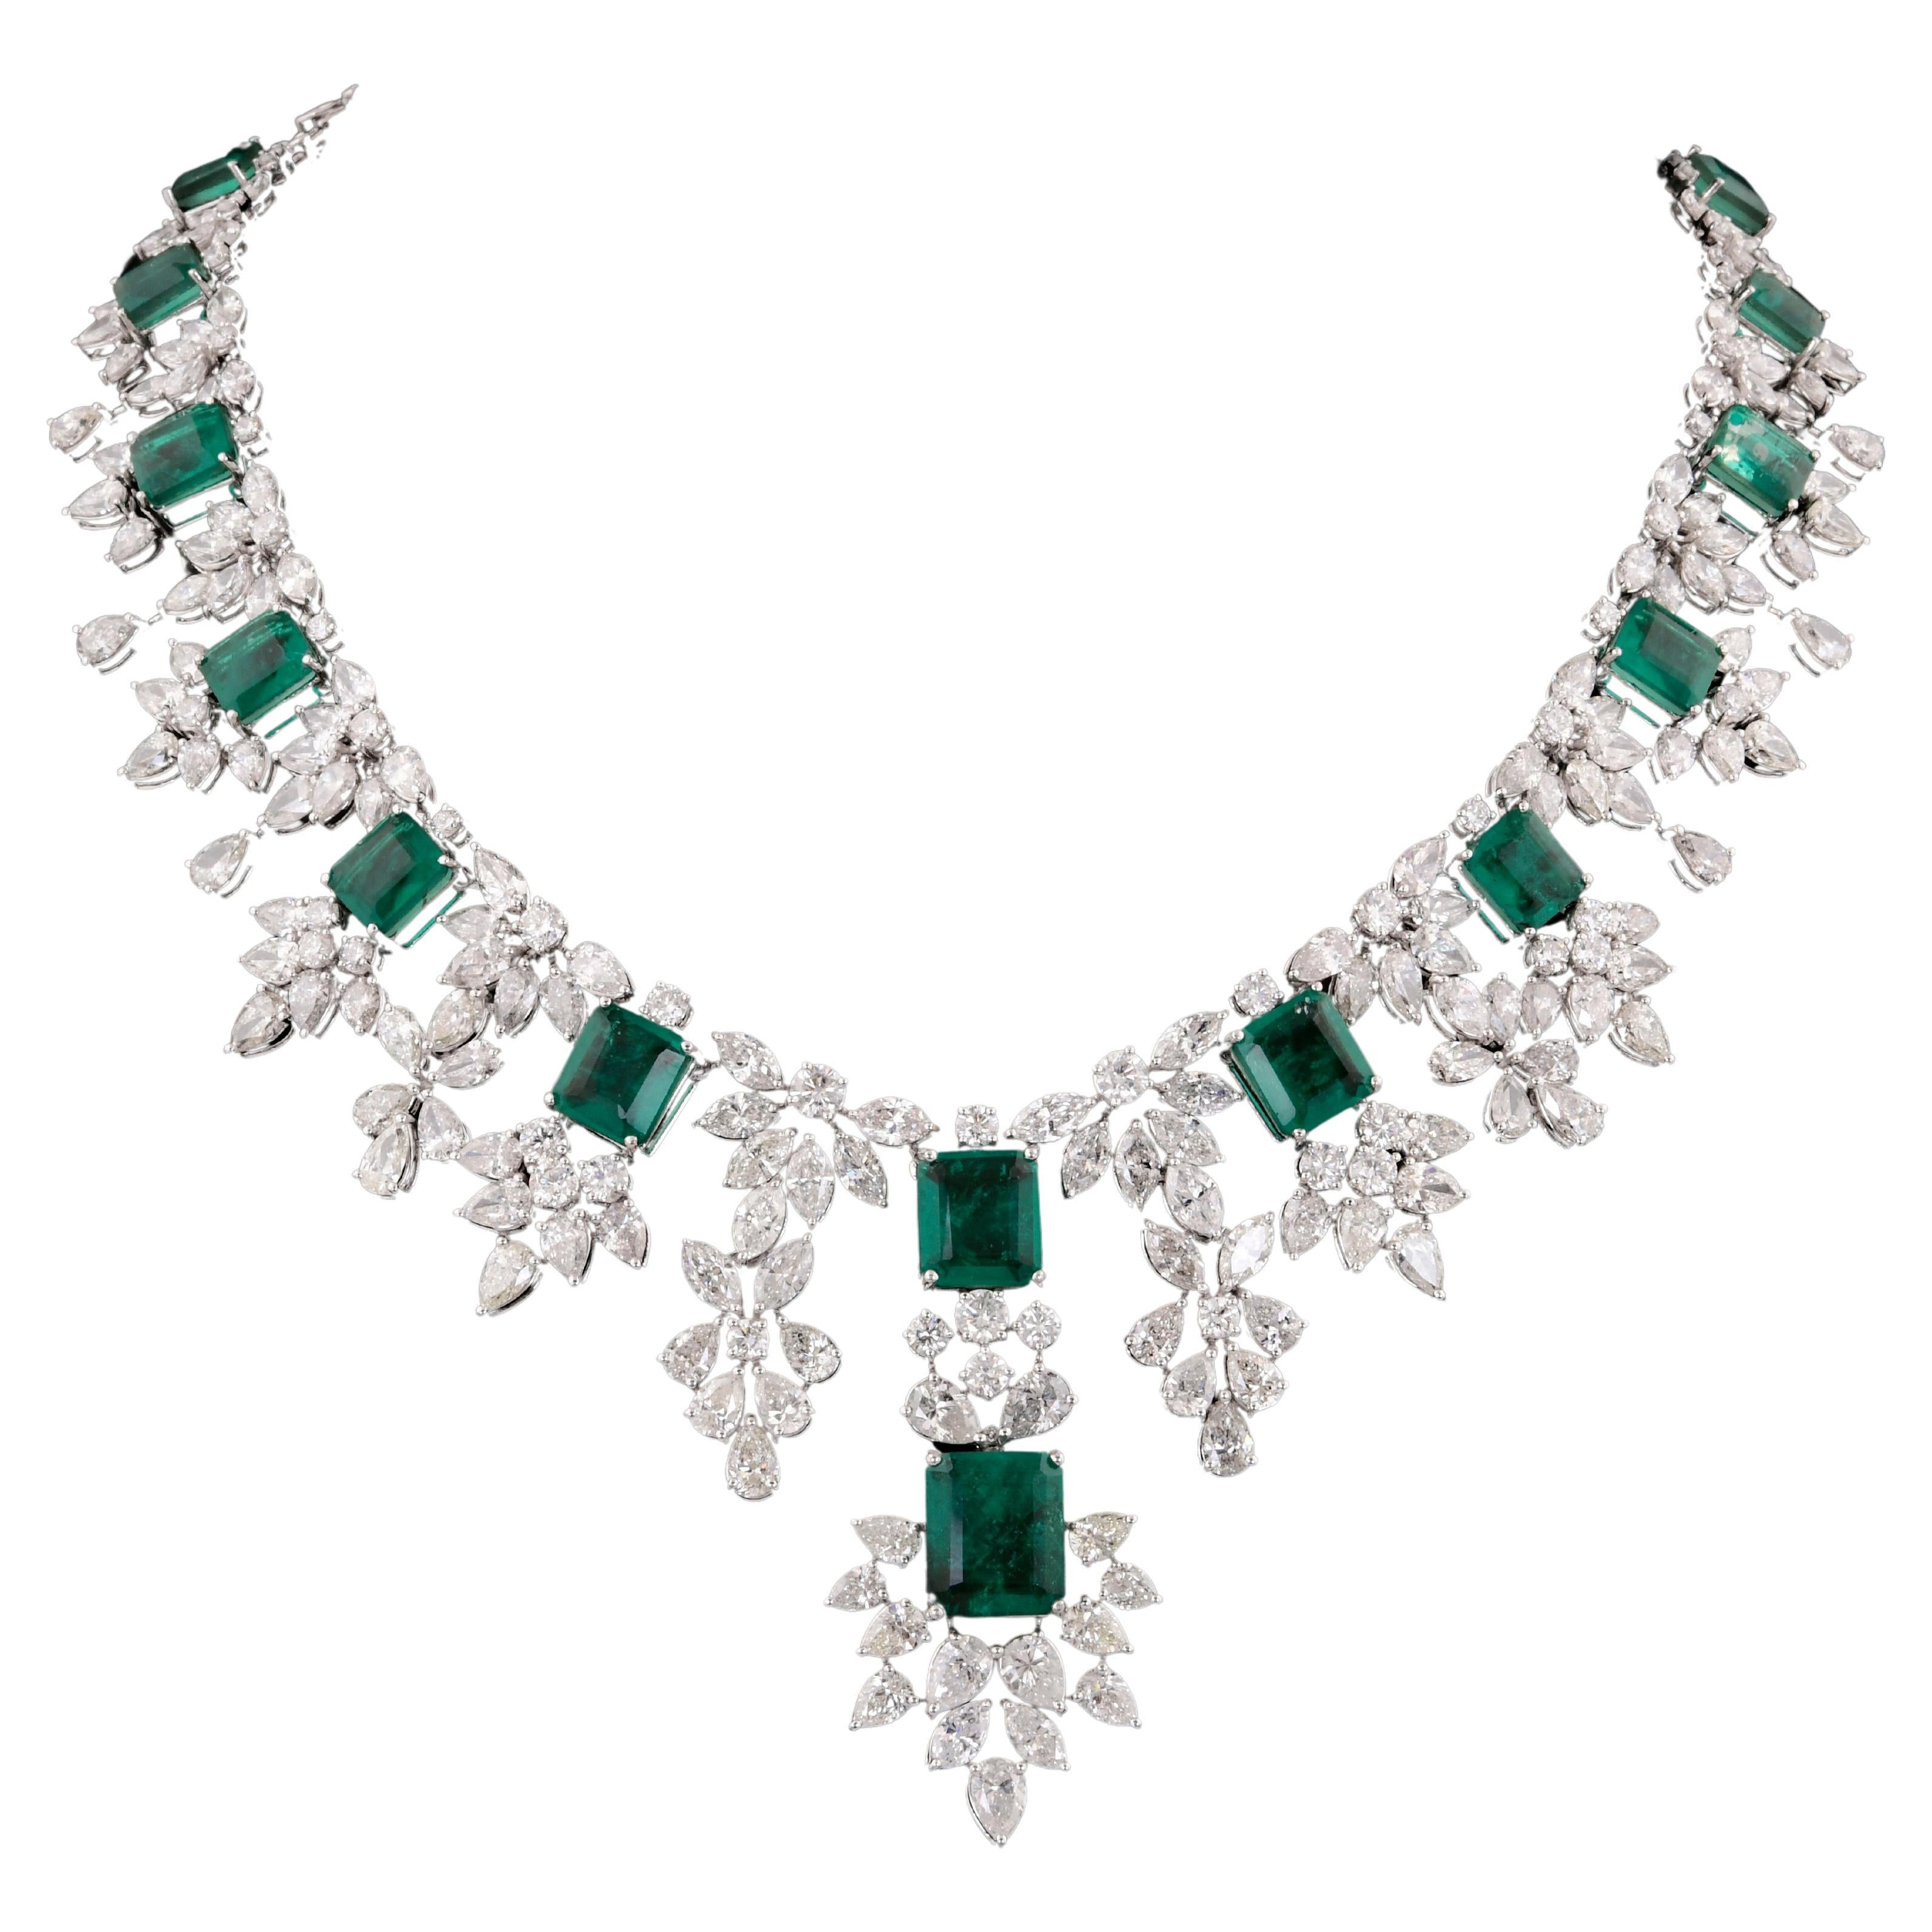 Zambian Emerald Gemstone Necklace Marquise Diamond 18 Karat White Gold Jewelry